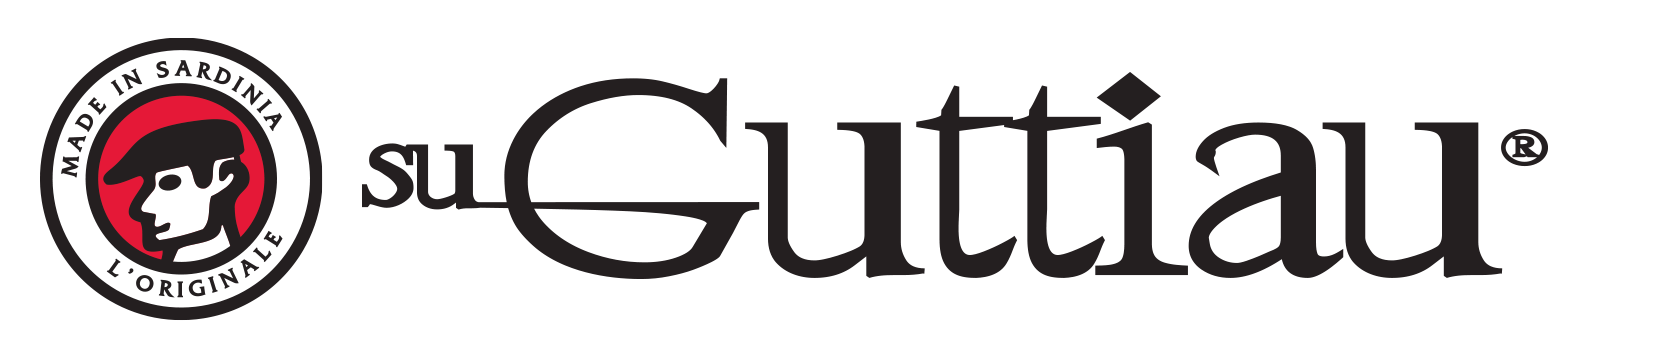 Guttiau